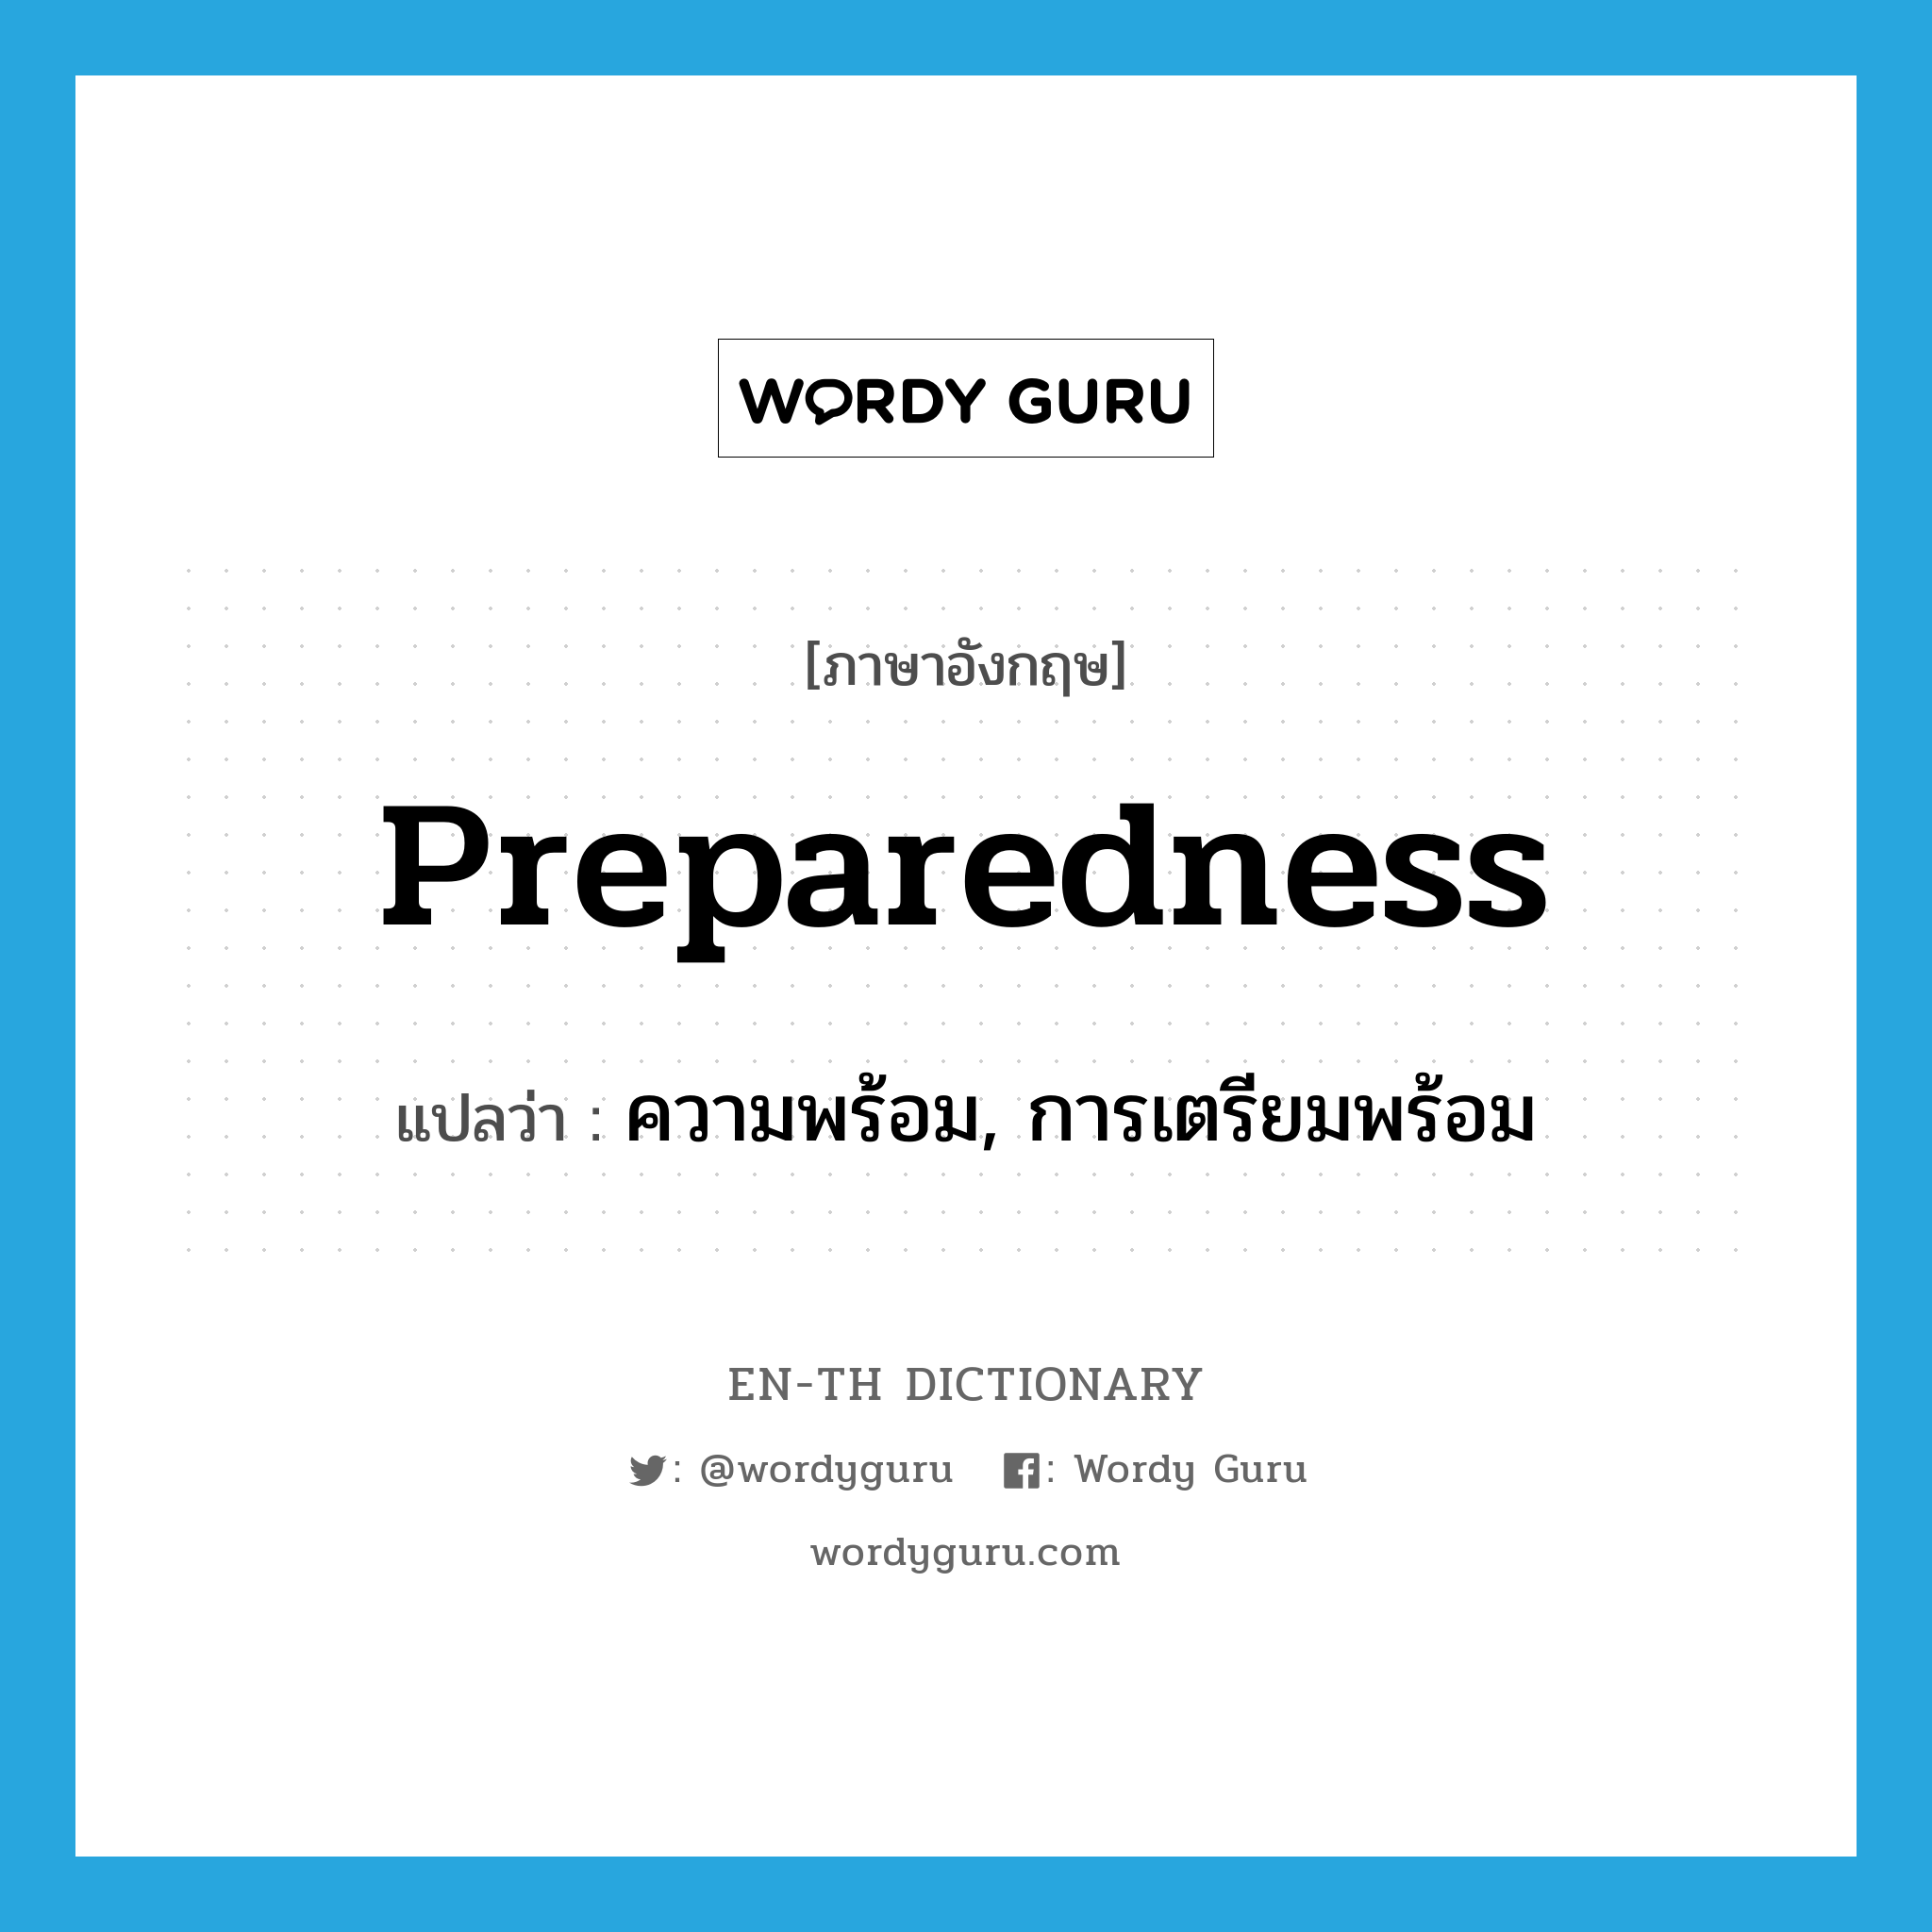 ความพร้อม, การเตรียมพร้อม ภาษาอังกฤษ?, คำศัพท์ภาษาอังกฤษ ความพร้อม, การเตรียมพร้อม แปลว่า preparedness ประเภท N หมวด N